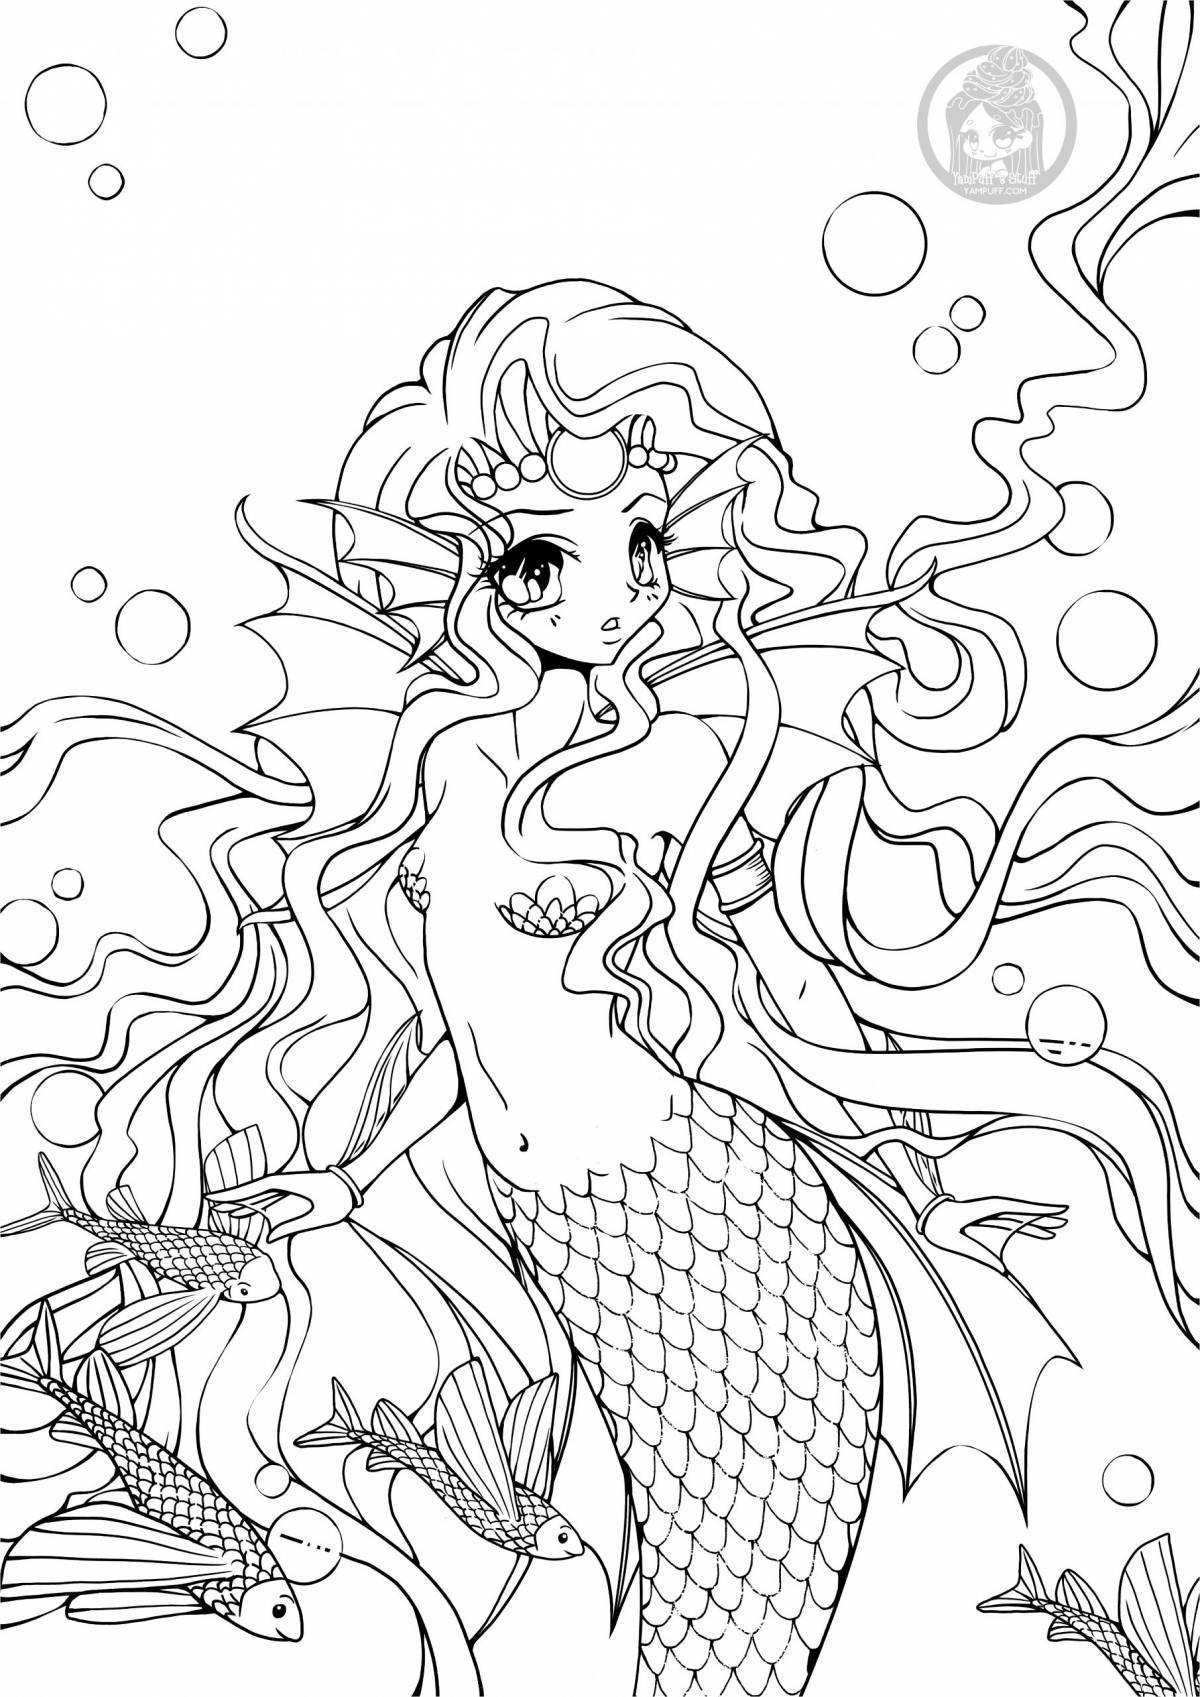 Exquisite coloring beautiful mermaid